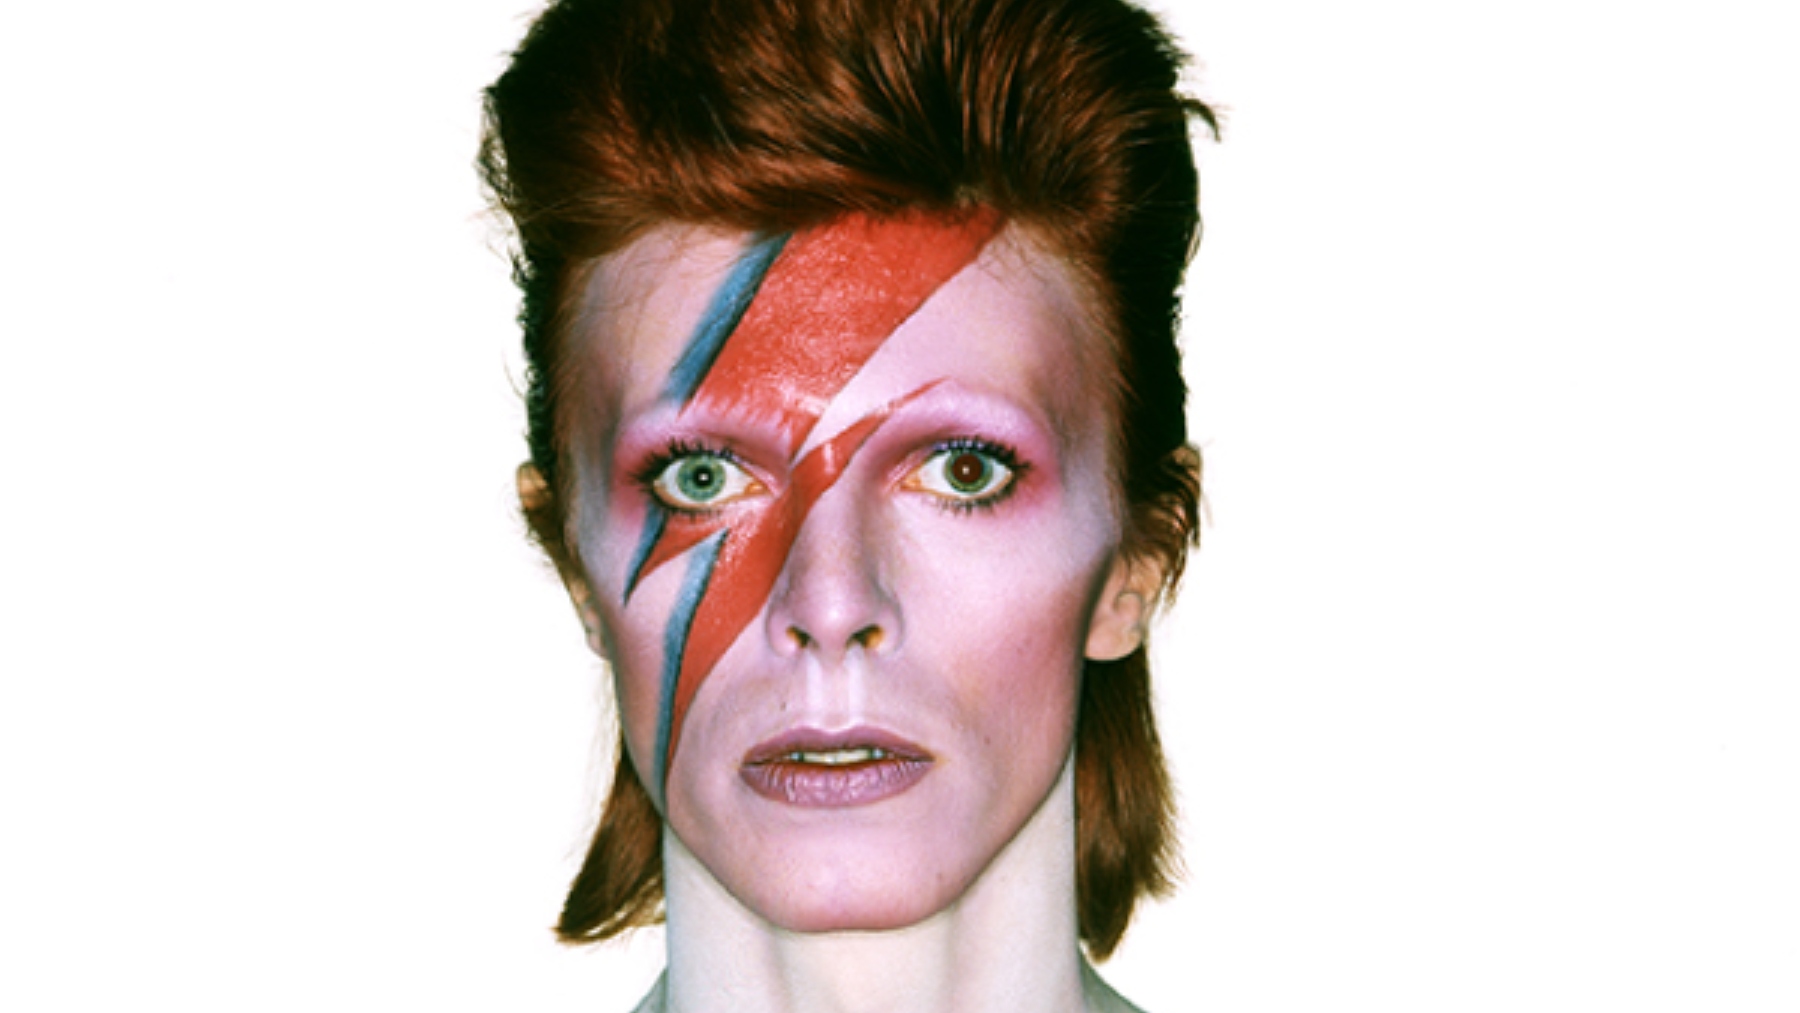 El estreno mundial en Madrid de la innovadora exposición fotográfica de Brian Duffy sobre David Bowie